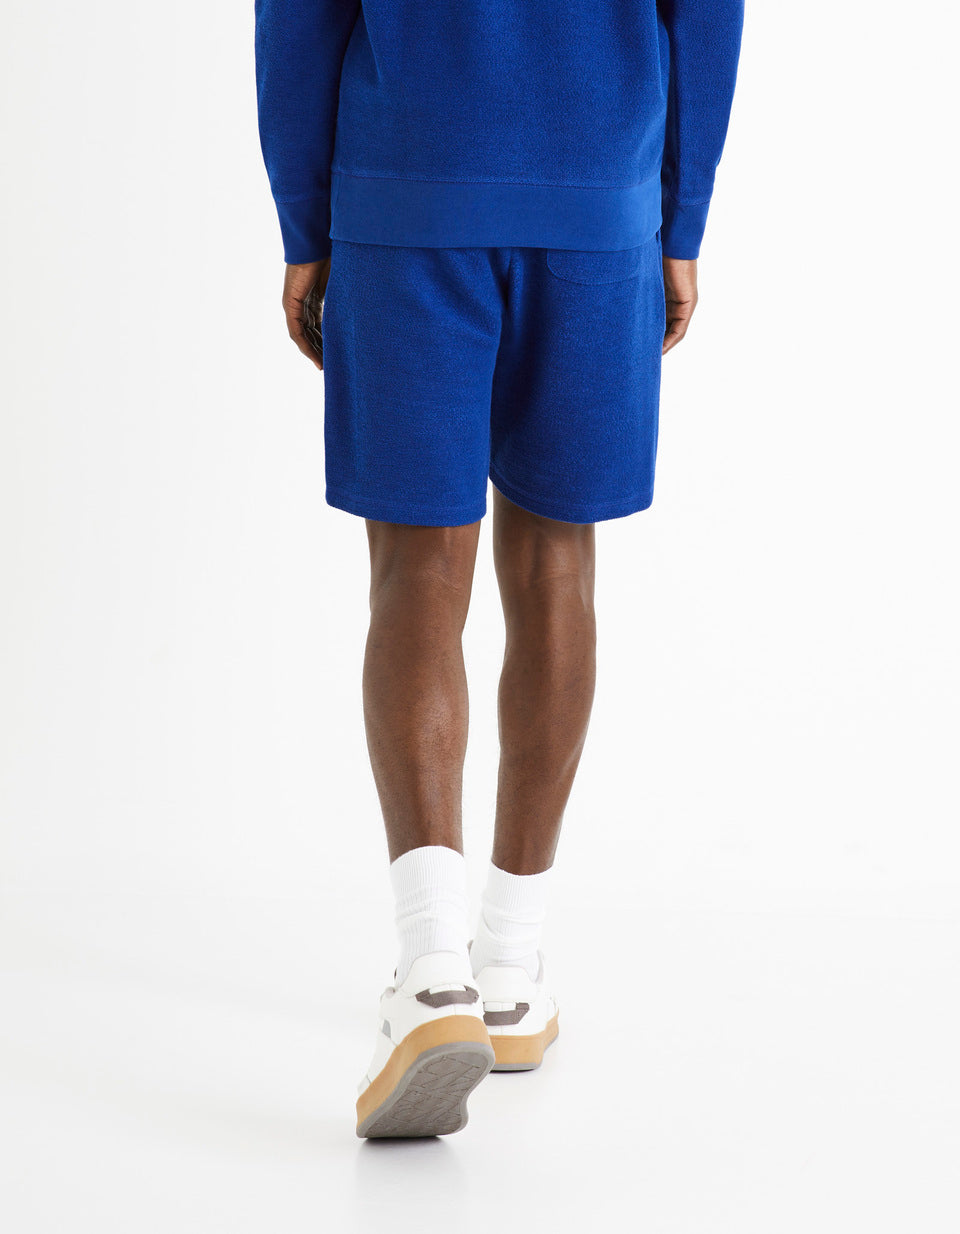 100% Cotton Shorts - Denim Blue - 04